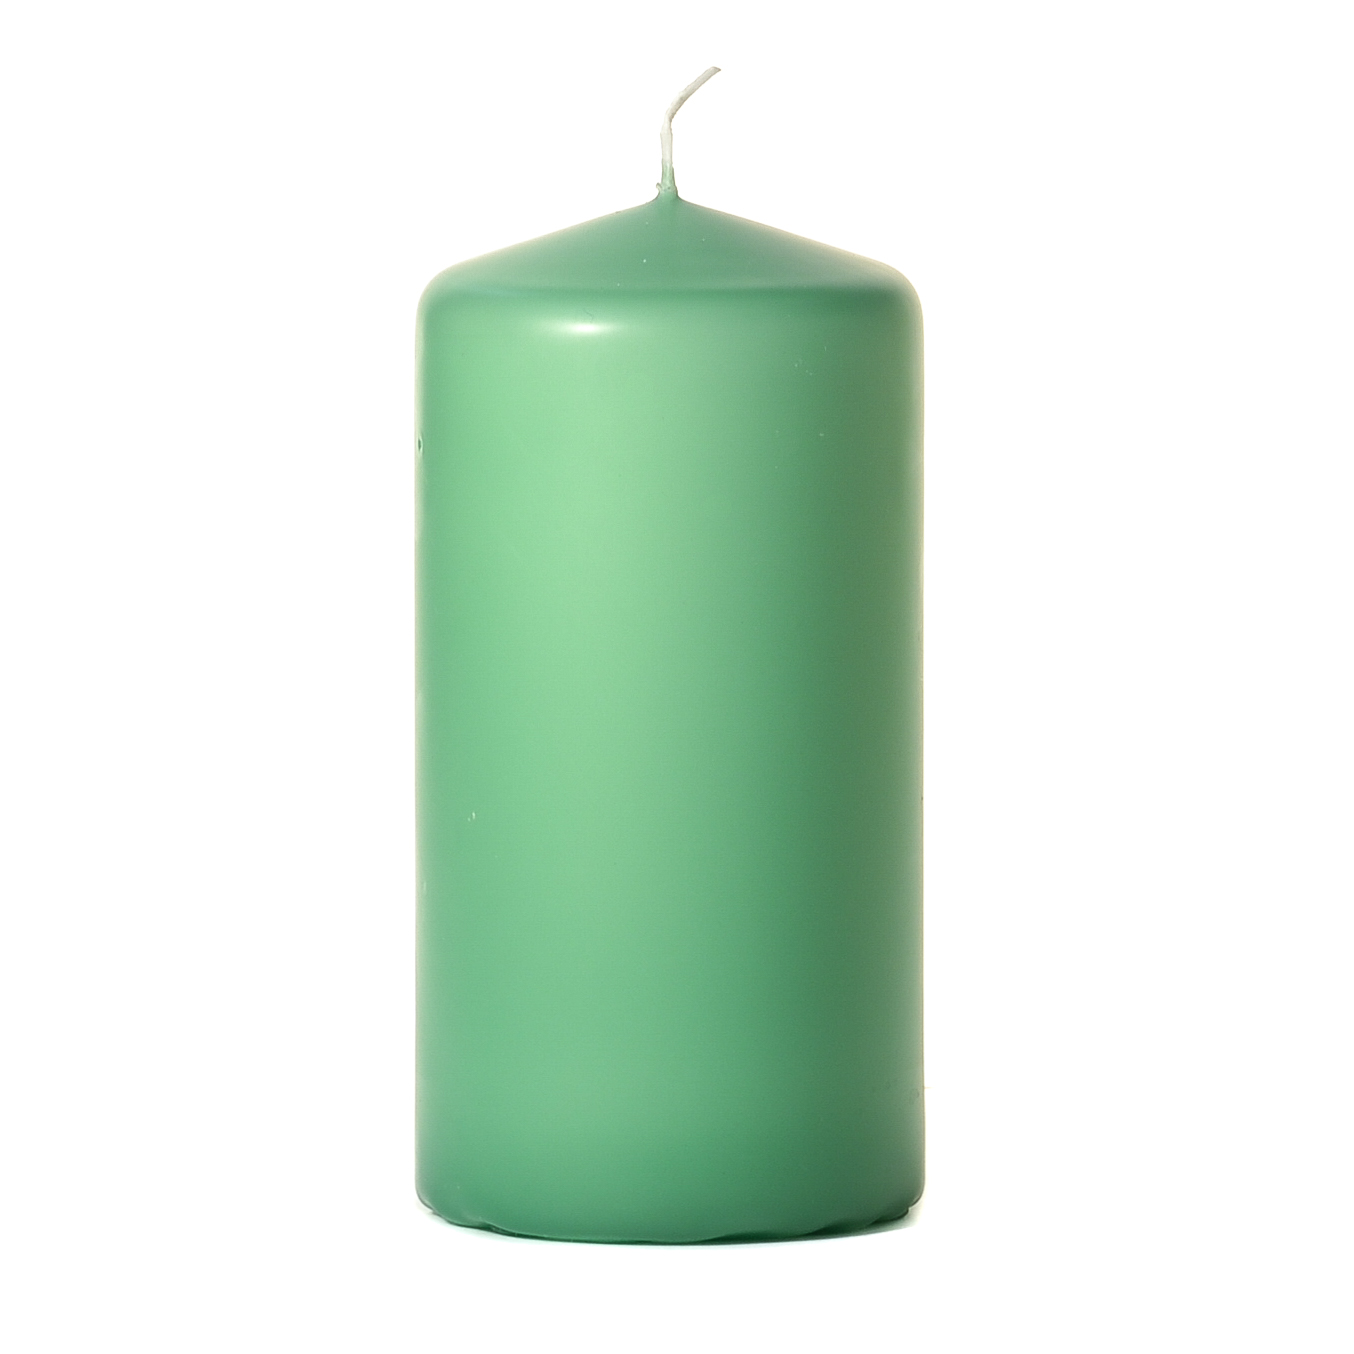 3x6 Mint Green Pillar Candles Unscented